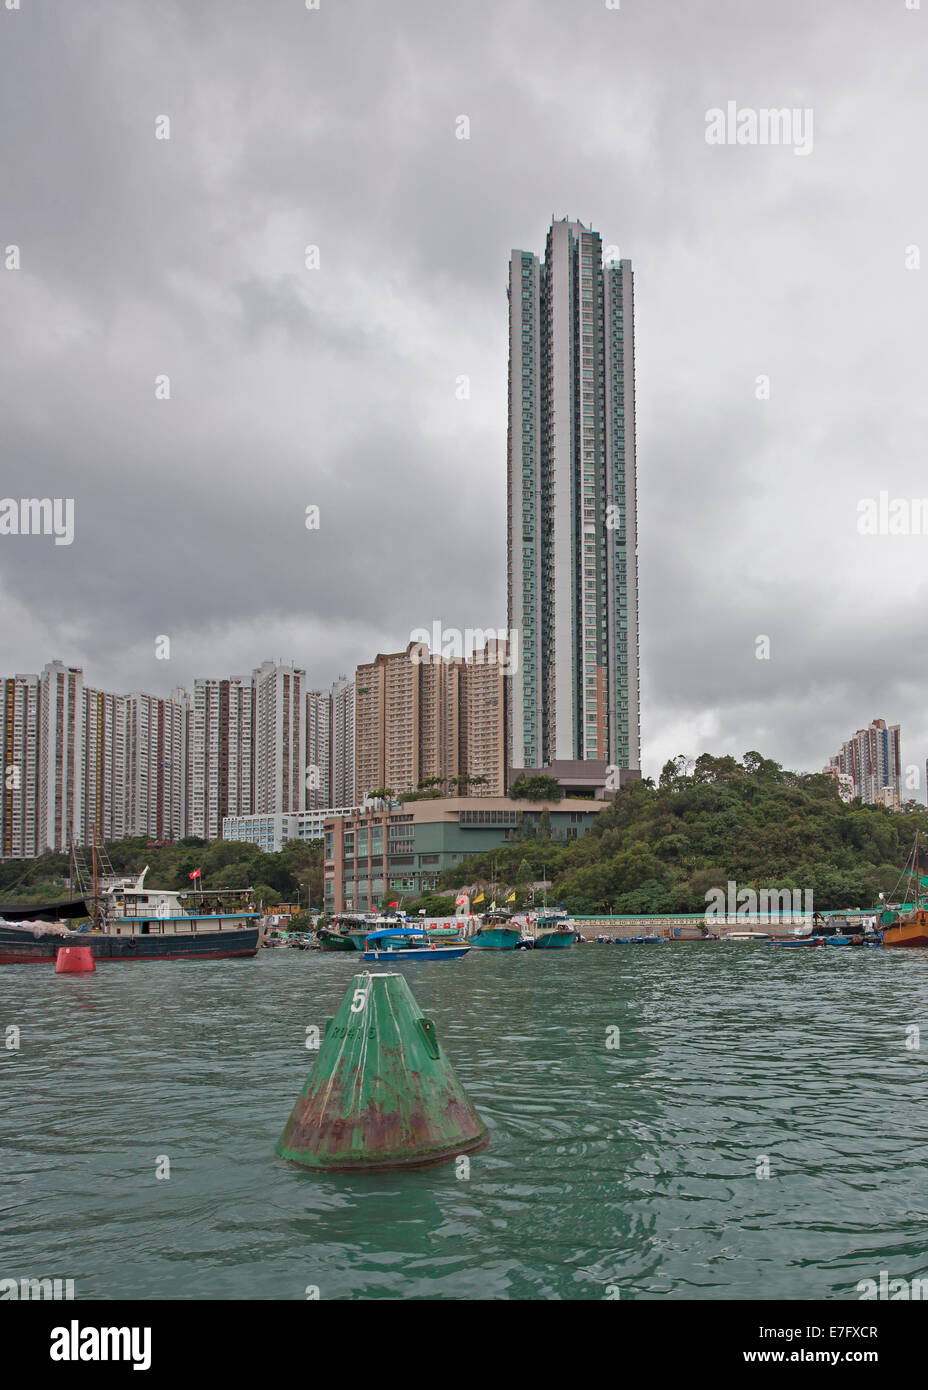 Aberdeen Harbour, Hong Kong Island, Hong Kong Stock Photo